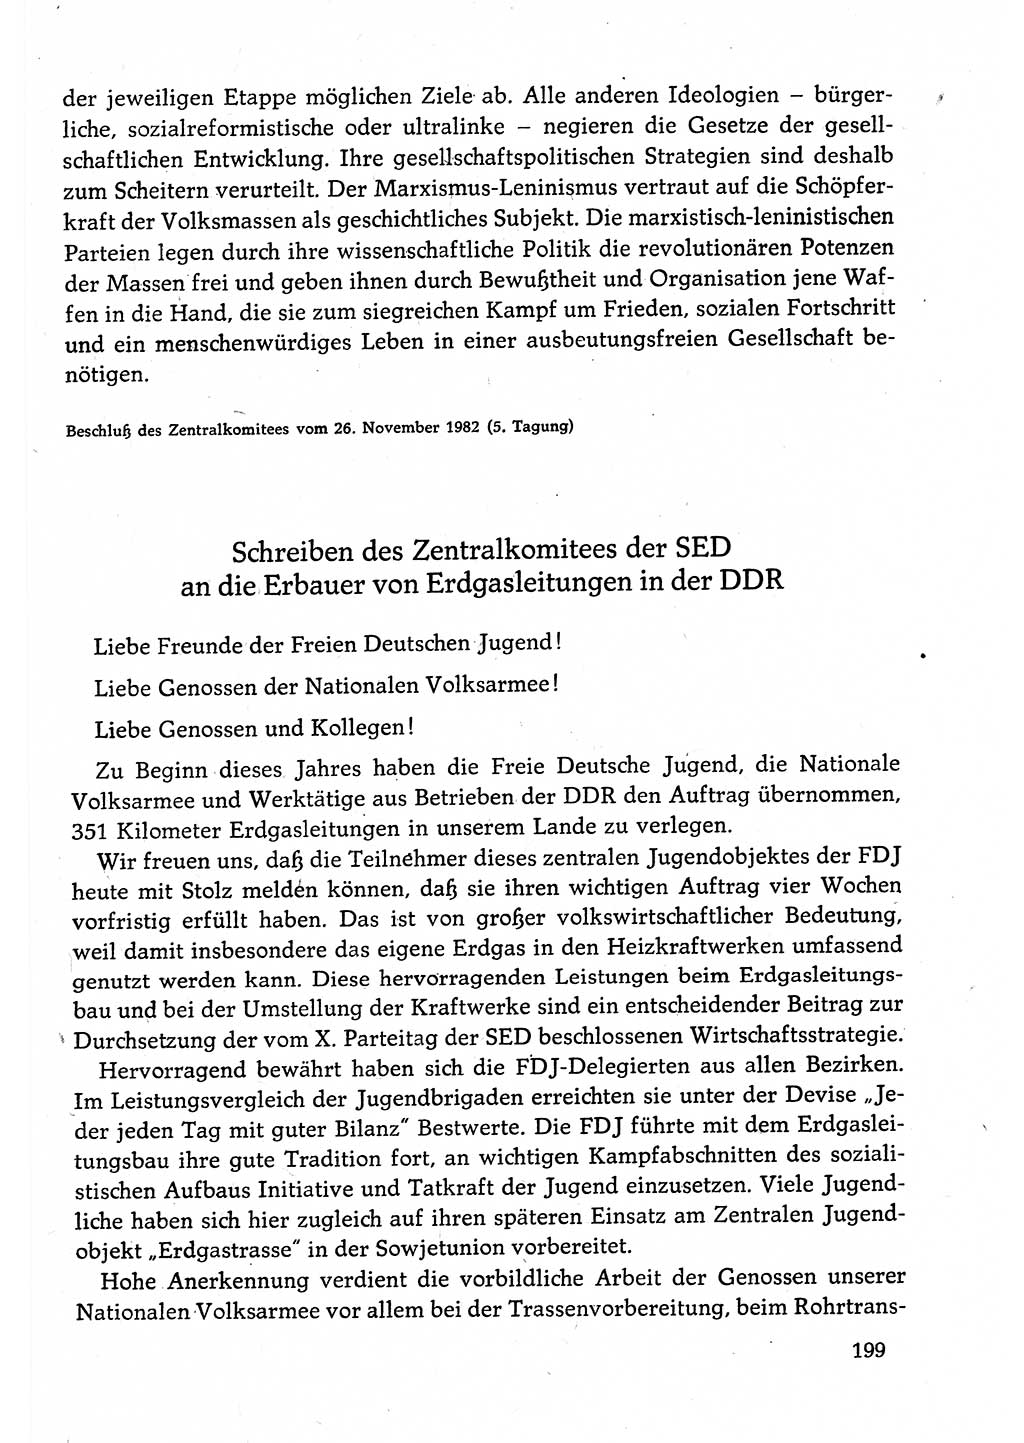 Dokumente der Sozialistischen Einheitspartei Deutschlands (SED) [Deutsche Demokratische Republik (DDR)] 1982-1983, Seite 199 (Dok. SED DDR 1982-1983, S. 199)